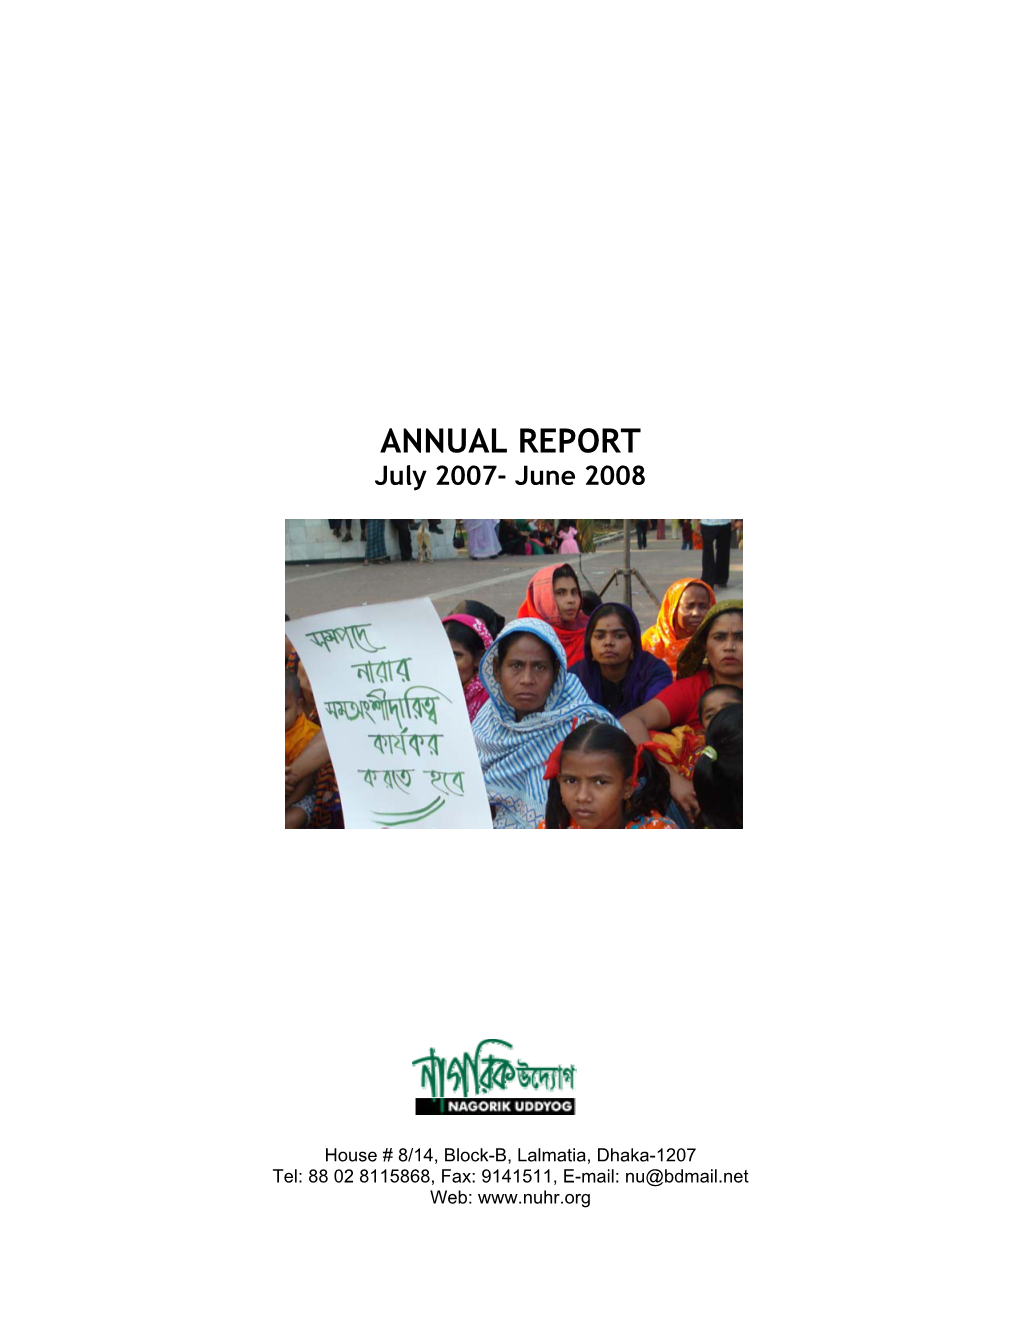 NU Annual Report- 2007-2008